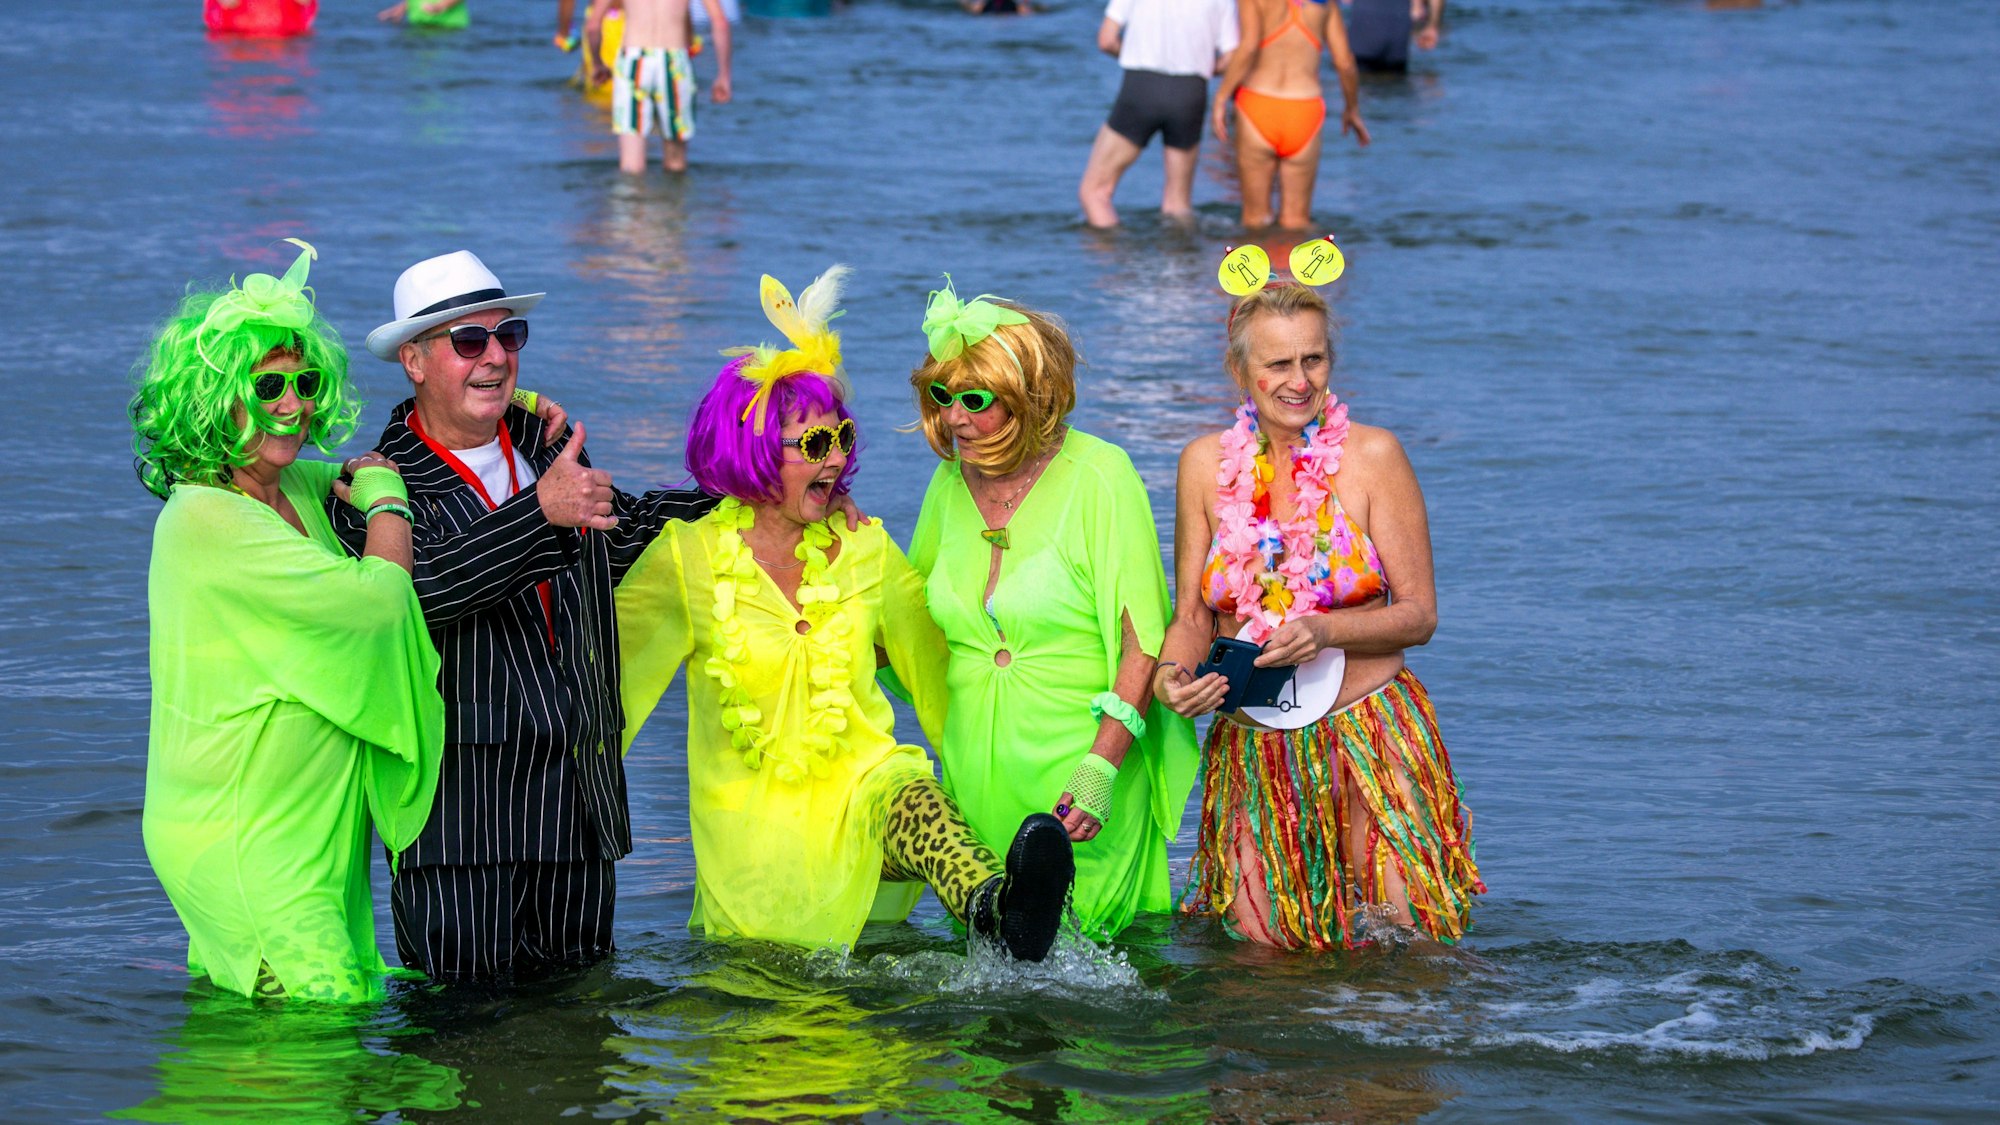 Gute Laune trotz eiskaltem Wasser: Mitglieder des Eisbadevereins Rostocker Seehunde feiern jeck den Karnevalsauftakt in der Ostsee.